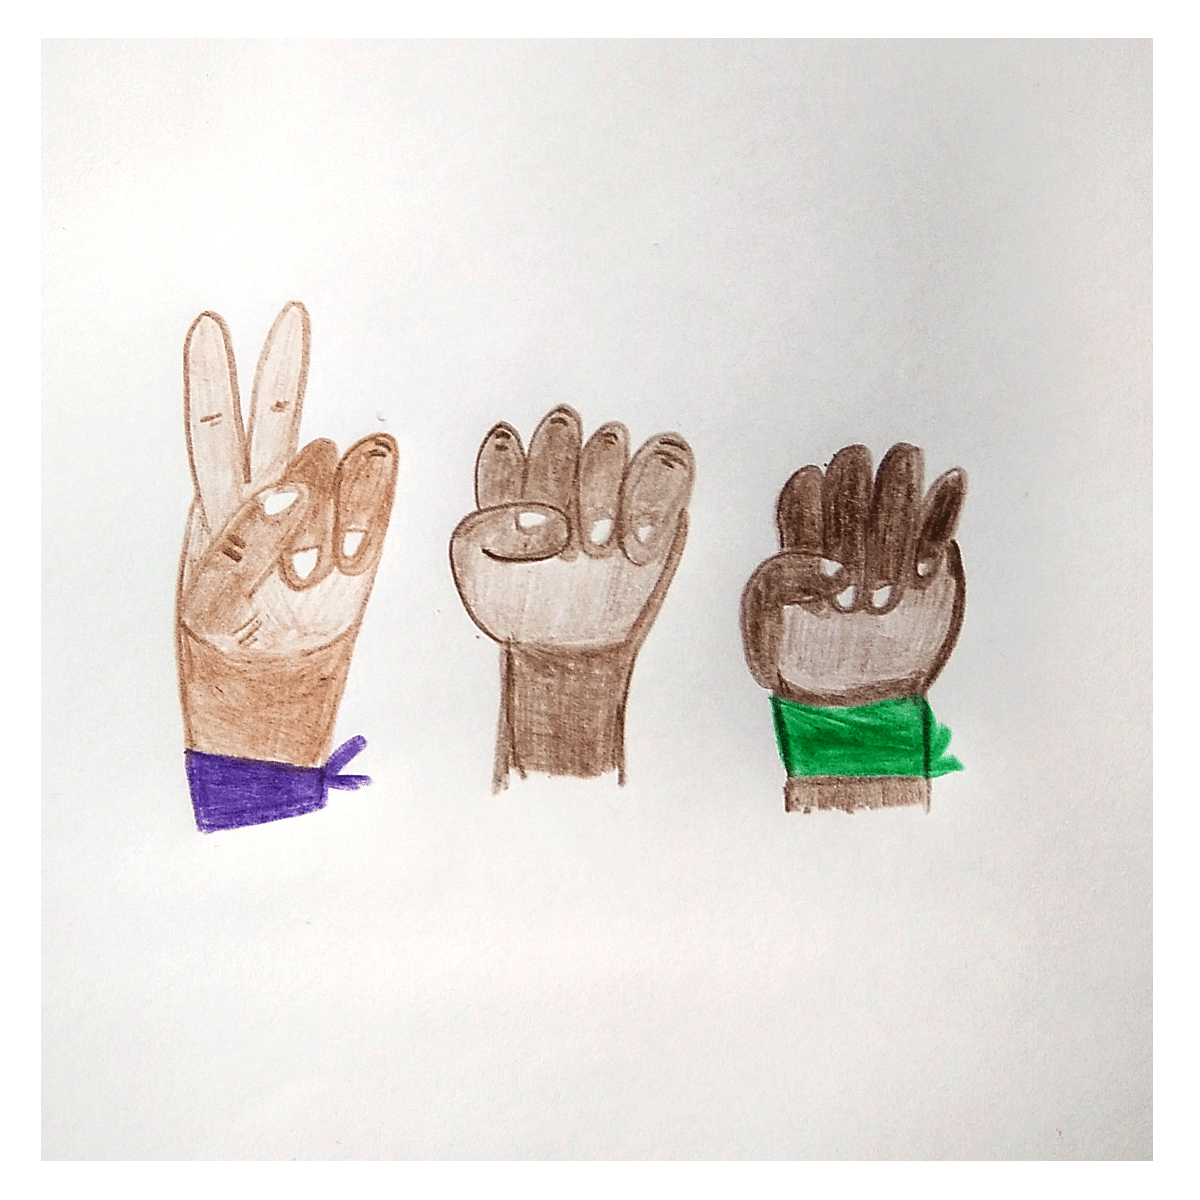 Tres manos con puños de distintos tonos de piel